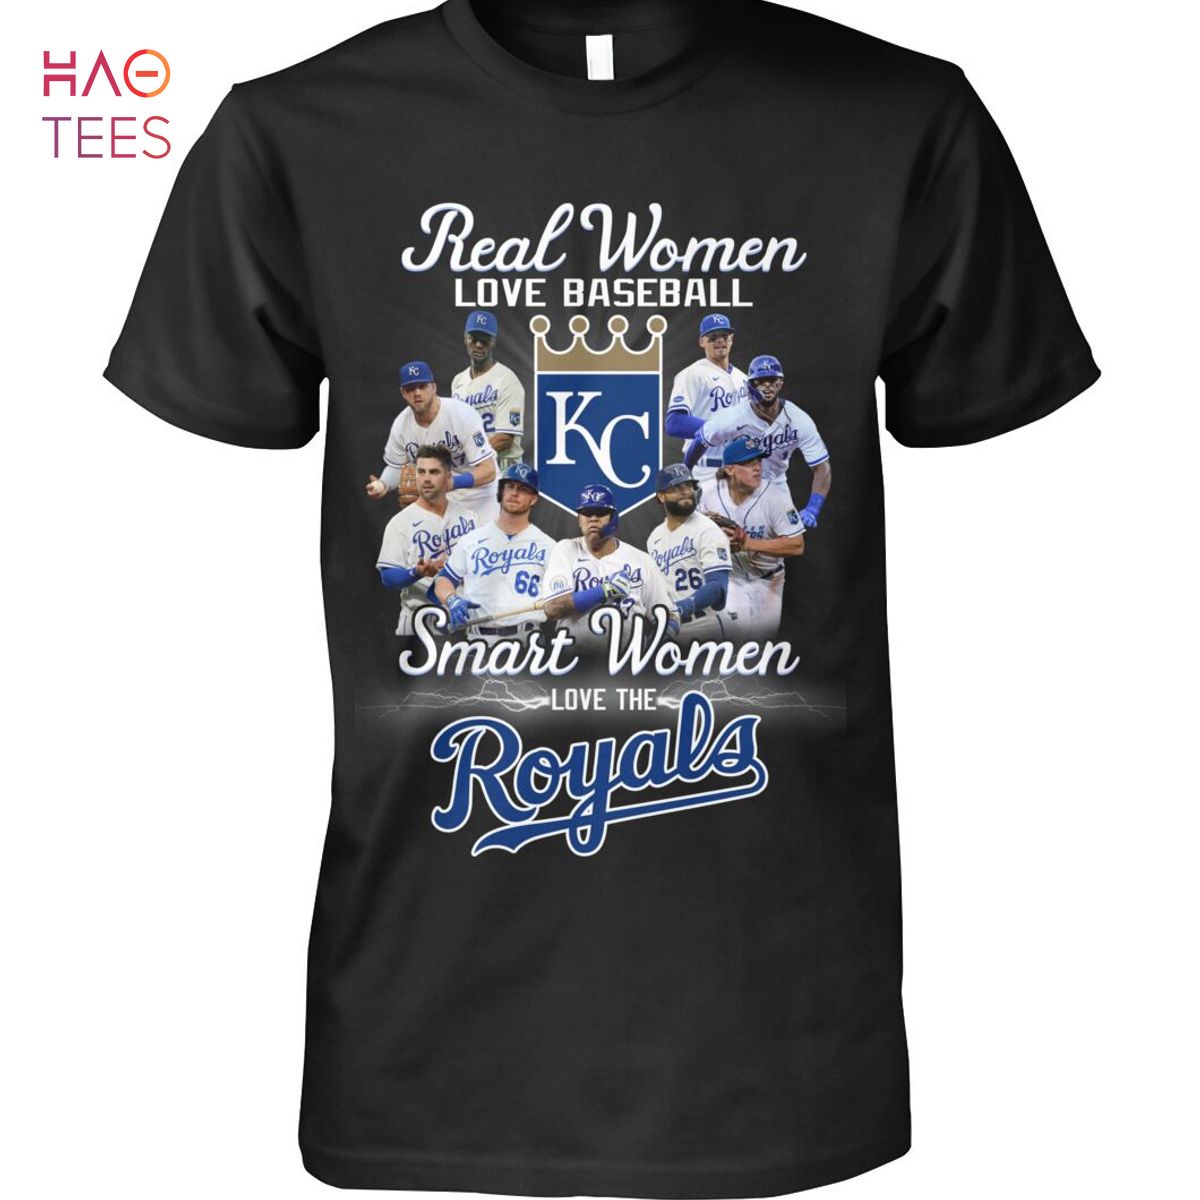 women's kc royals shirt